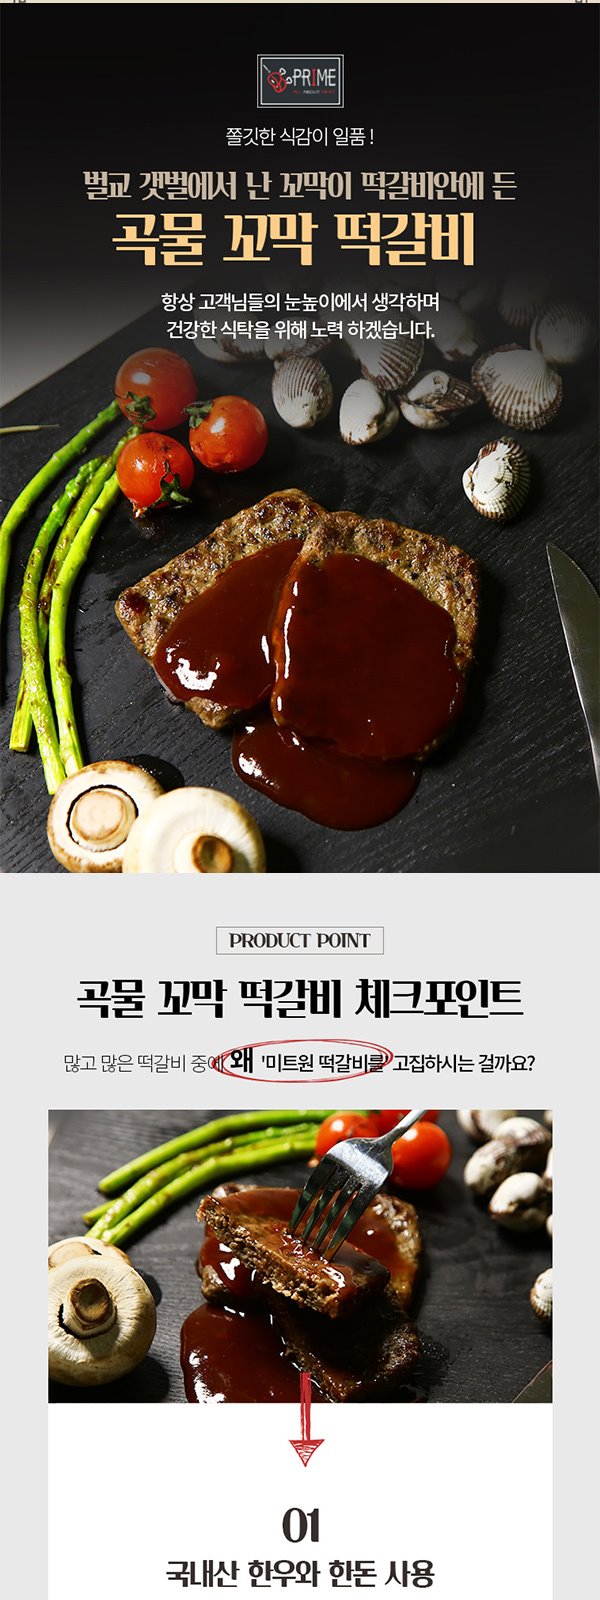 (주)미트원 food_0101_1